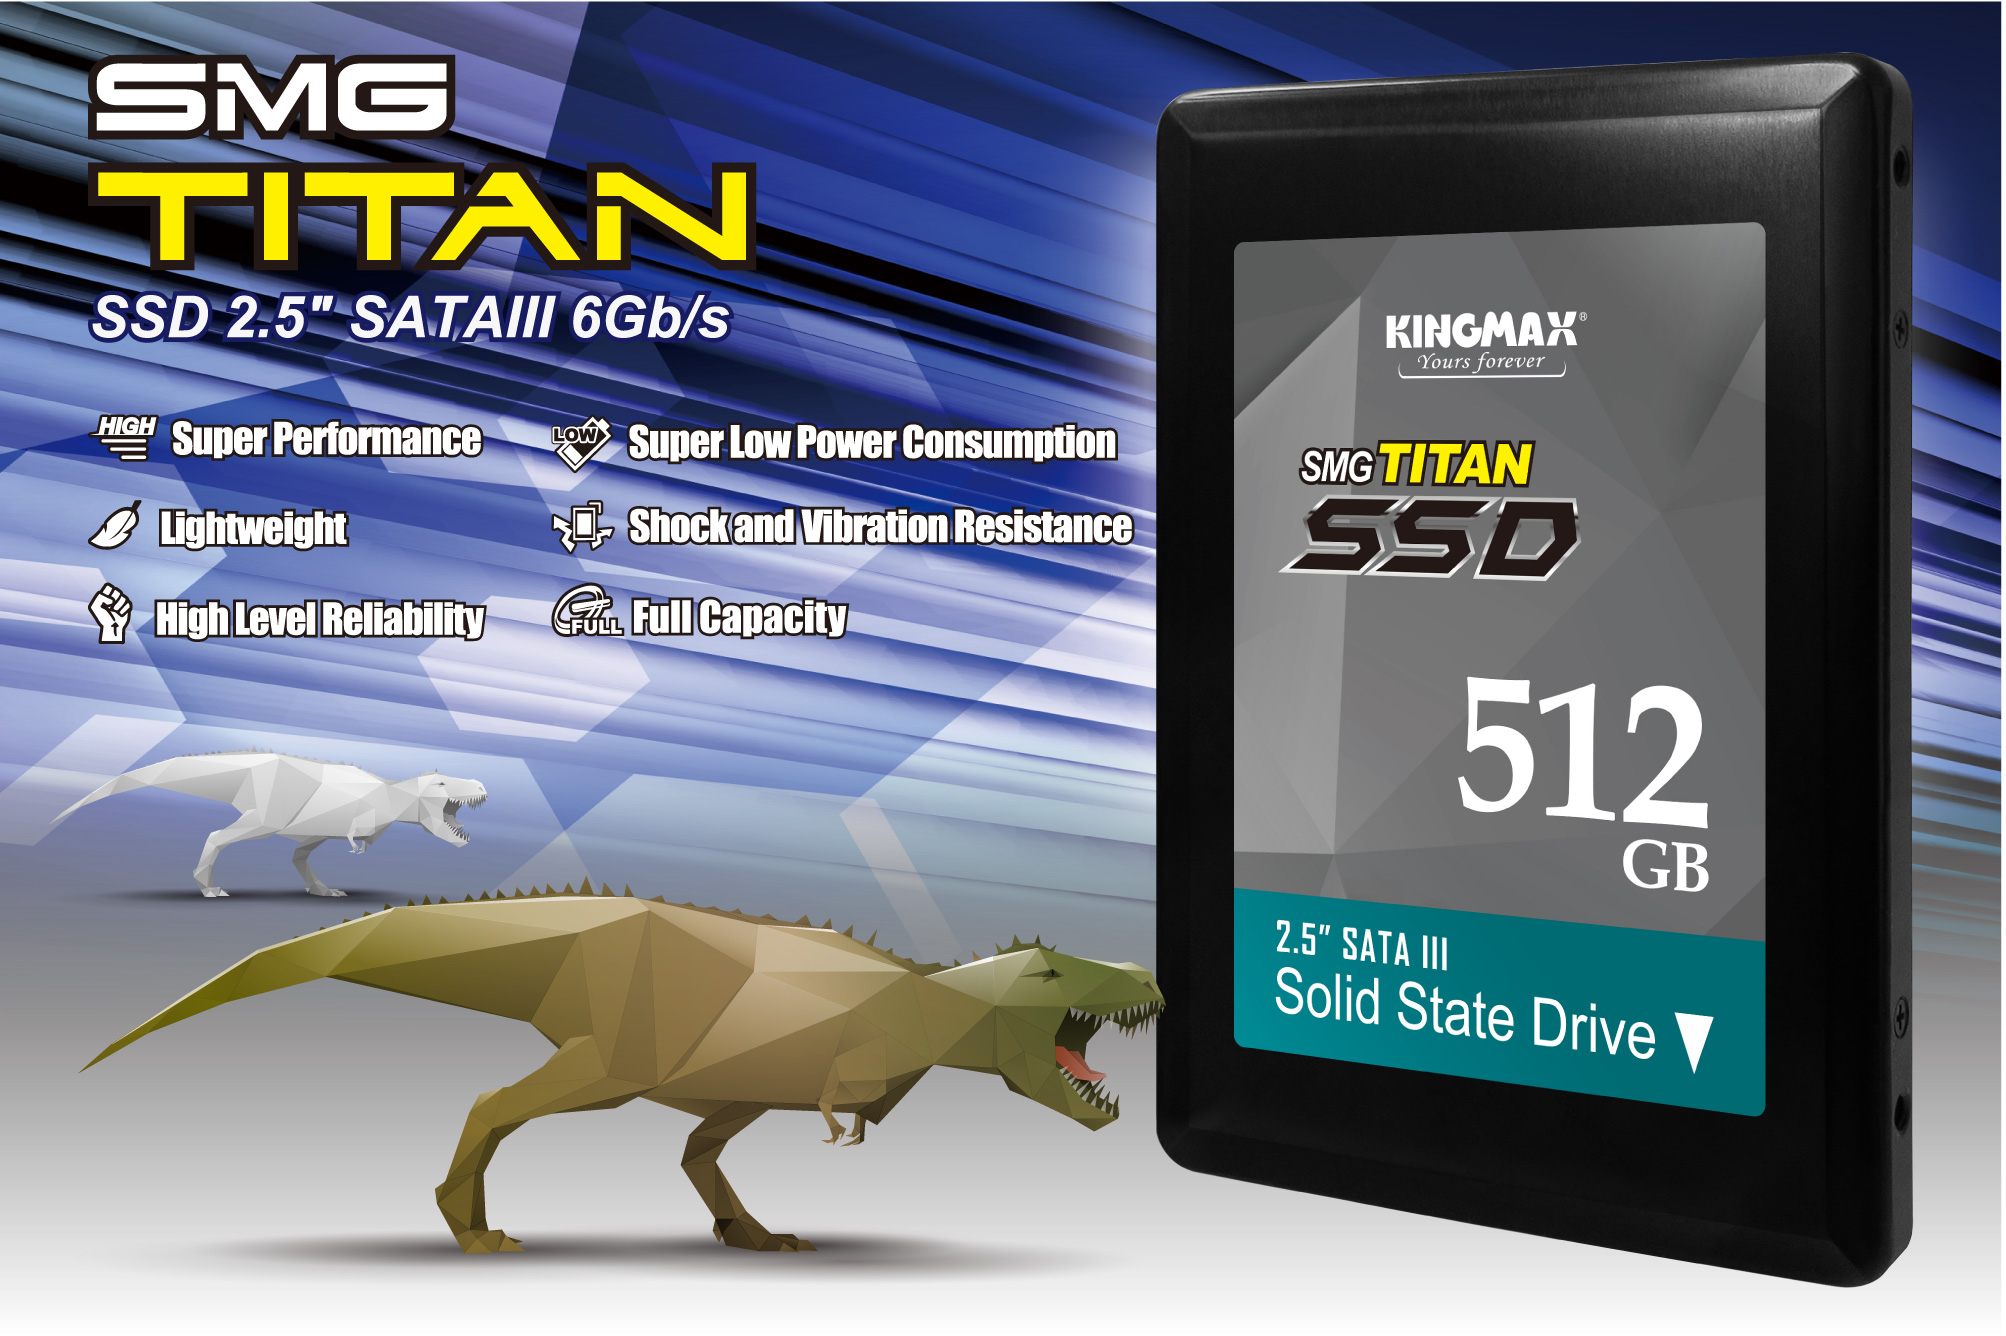 SSD-SMG Titan